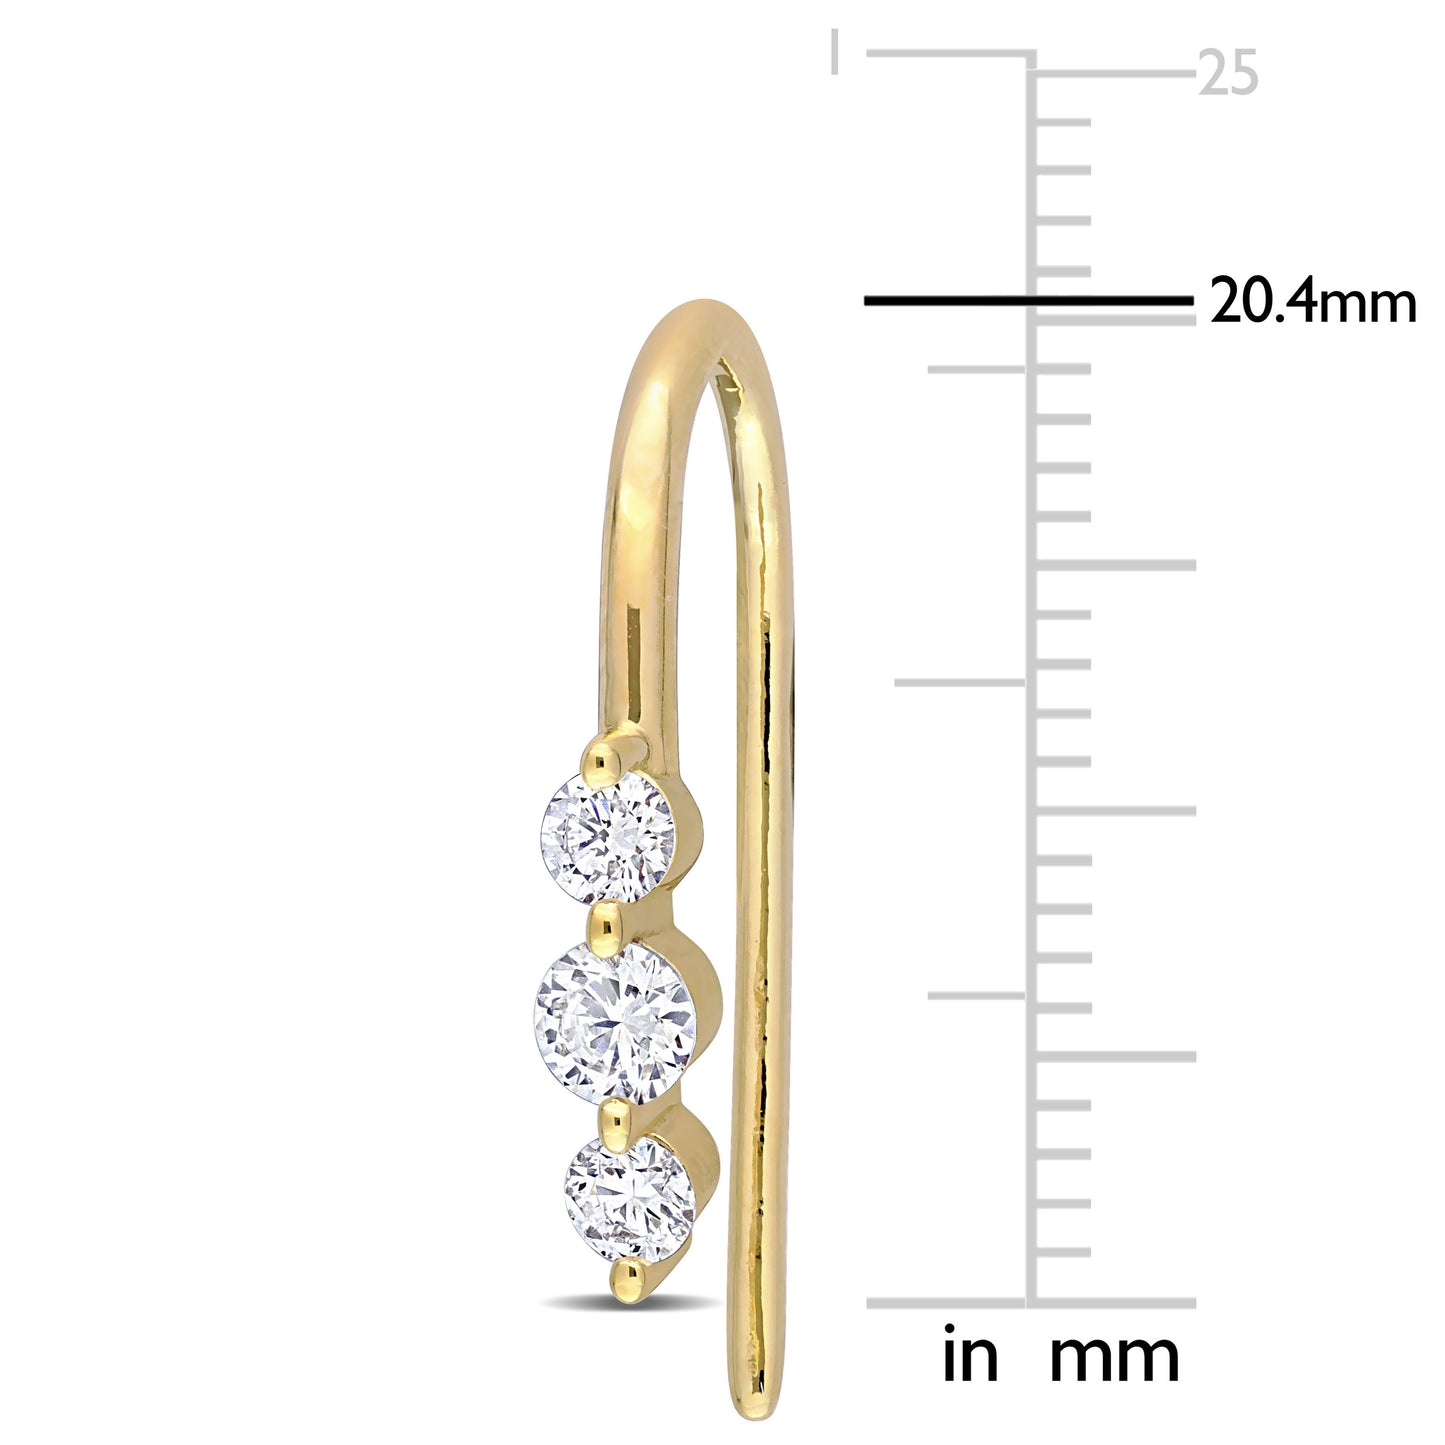 3-Stone Hook Diamond Earrings in 18k Yellow Silver